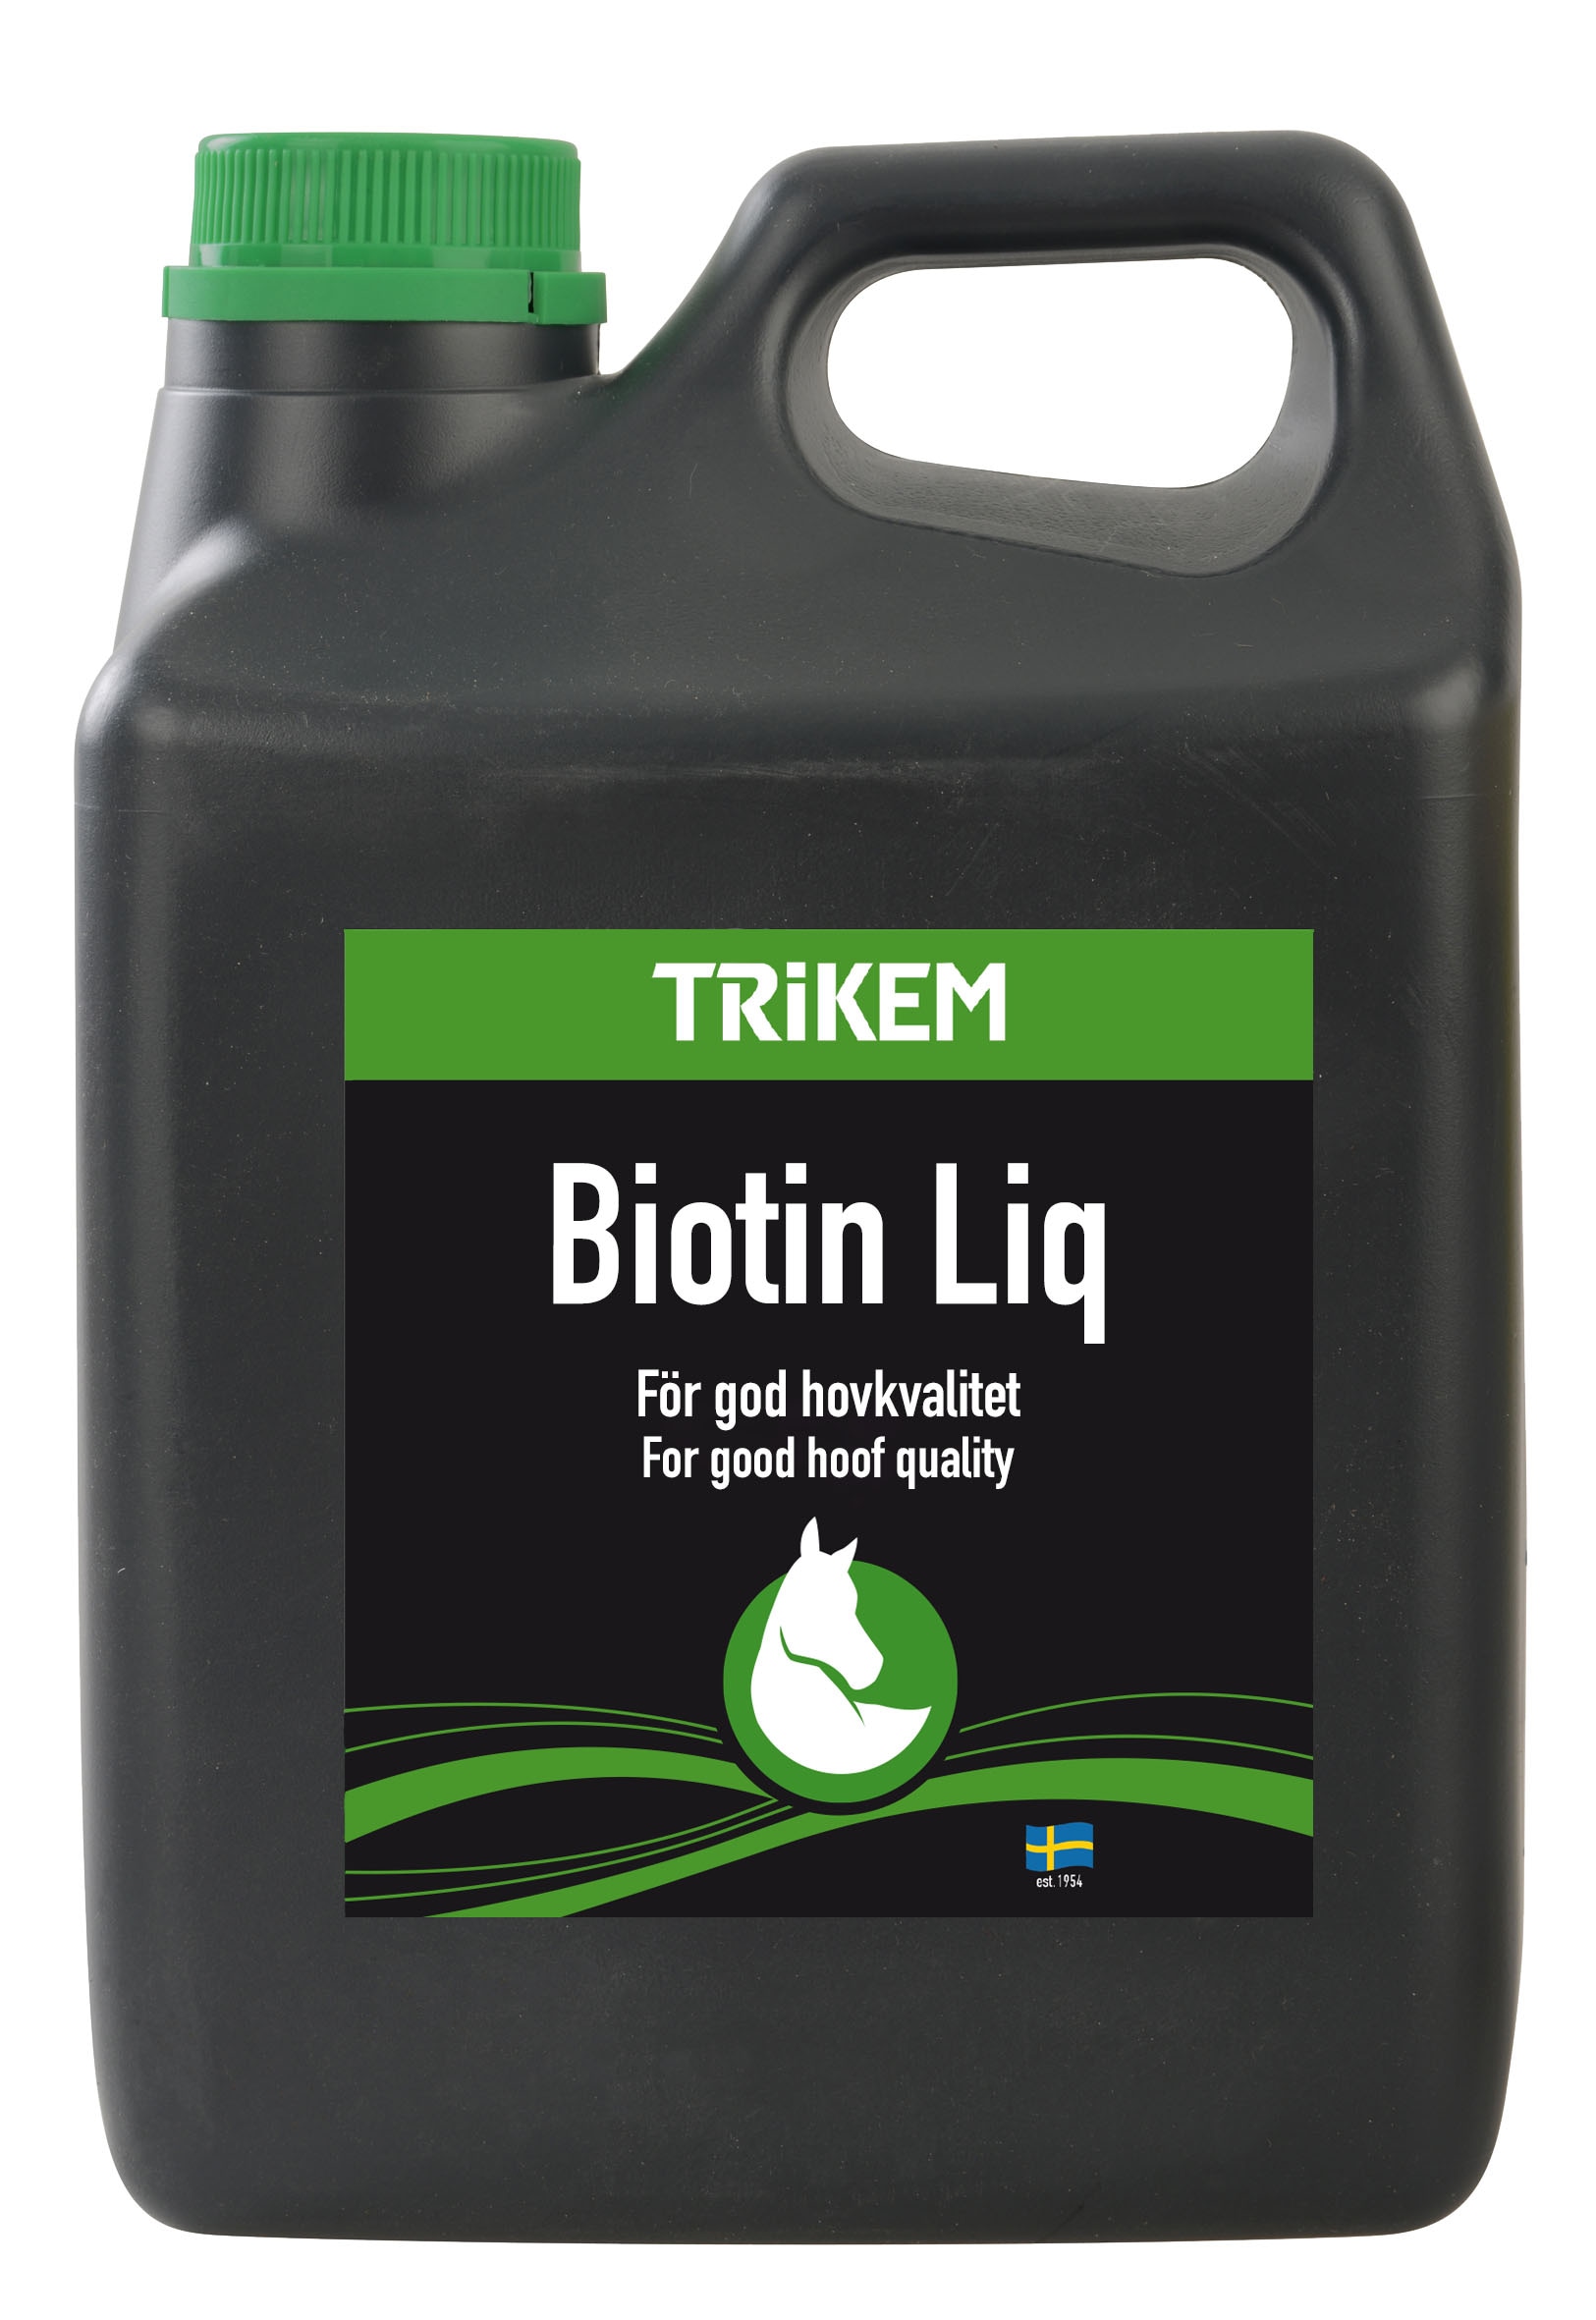 Trikem Biotin Liquid, 1 l